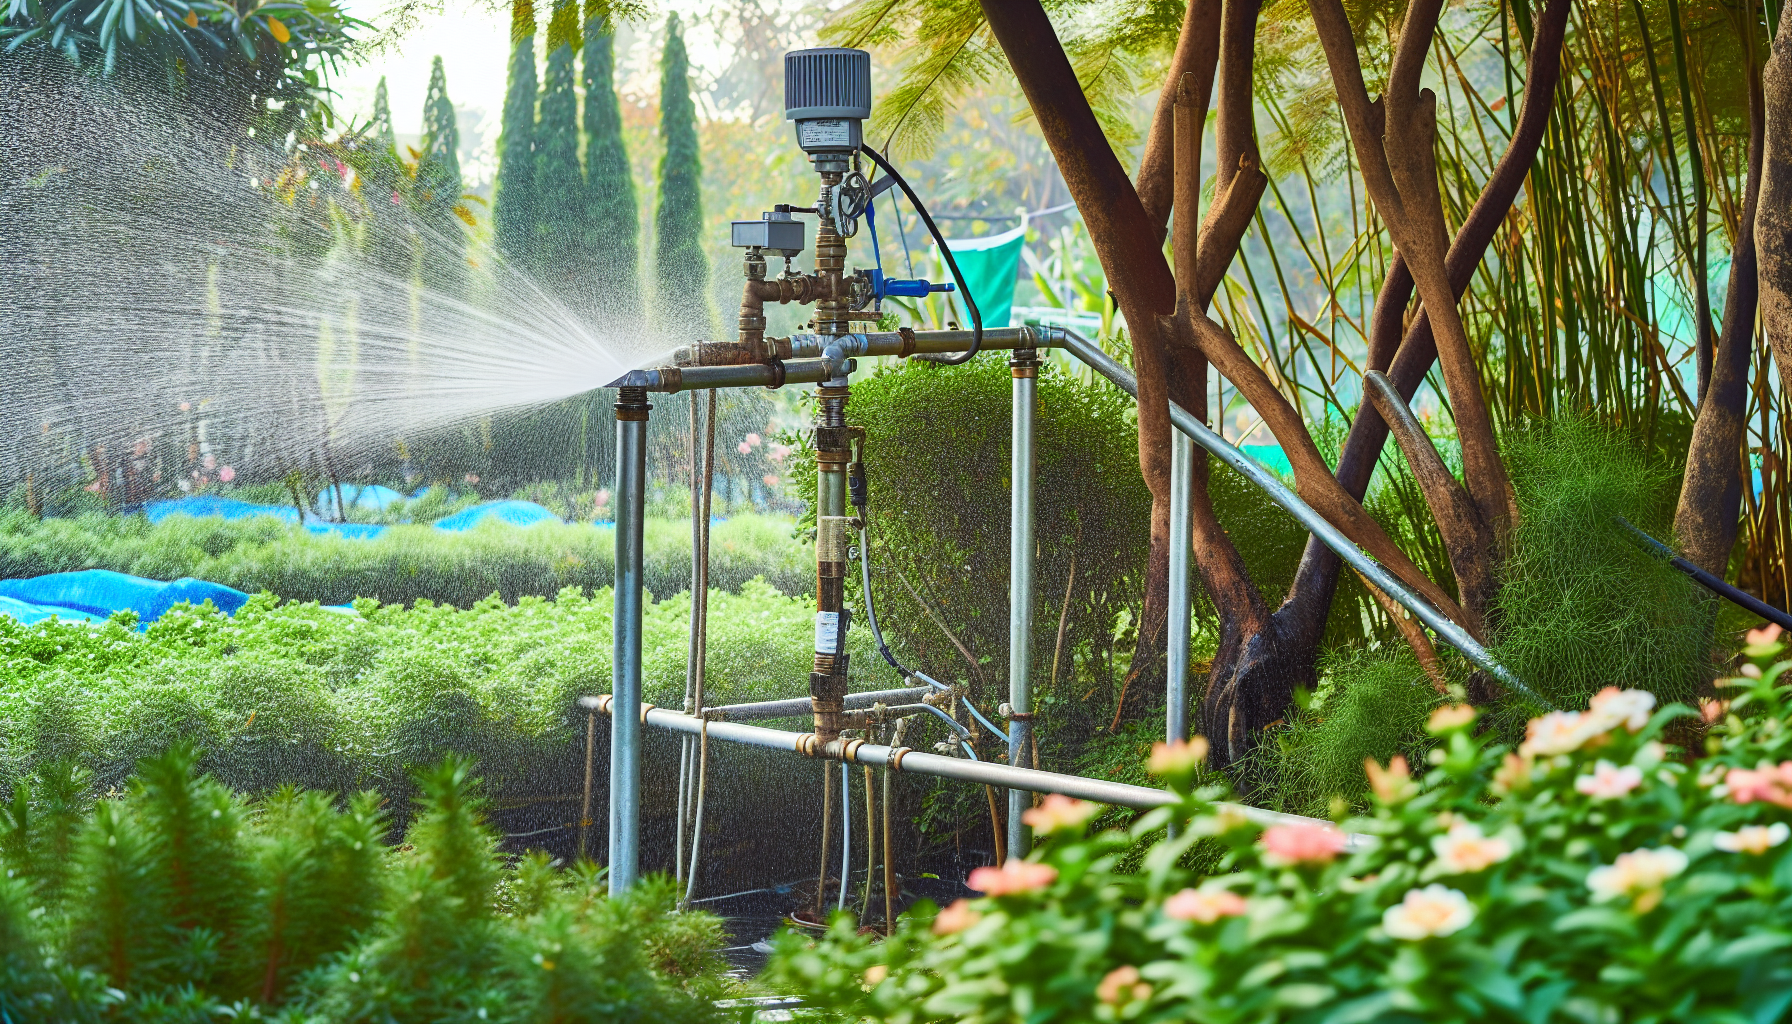 Garden irrigation system with pressure pump